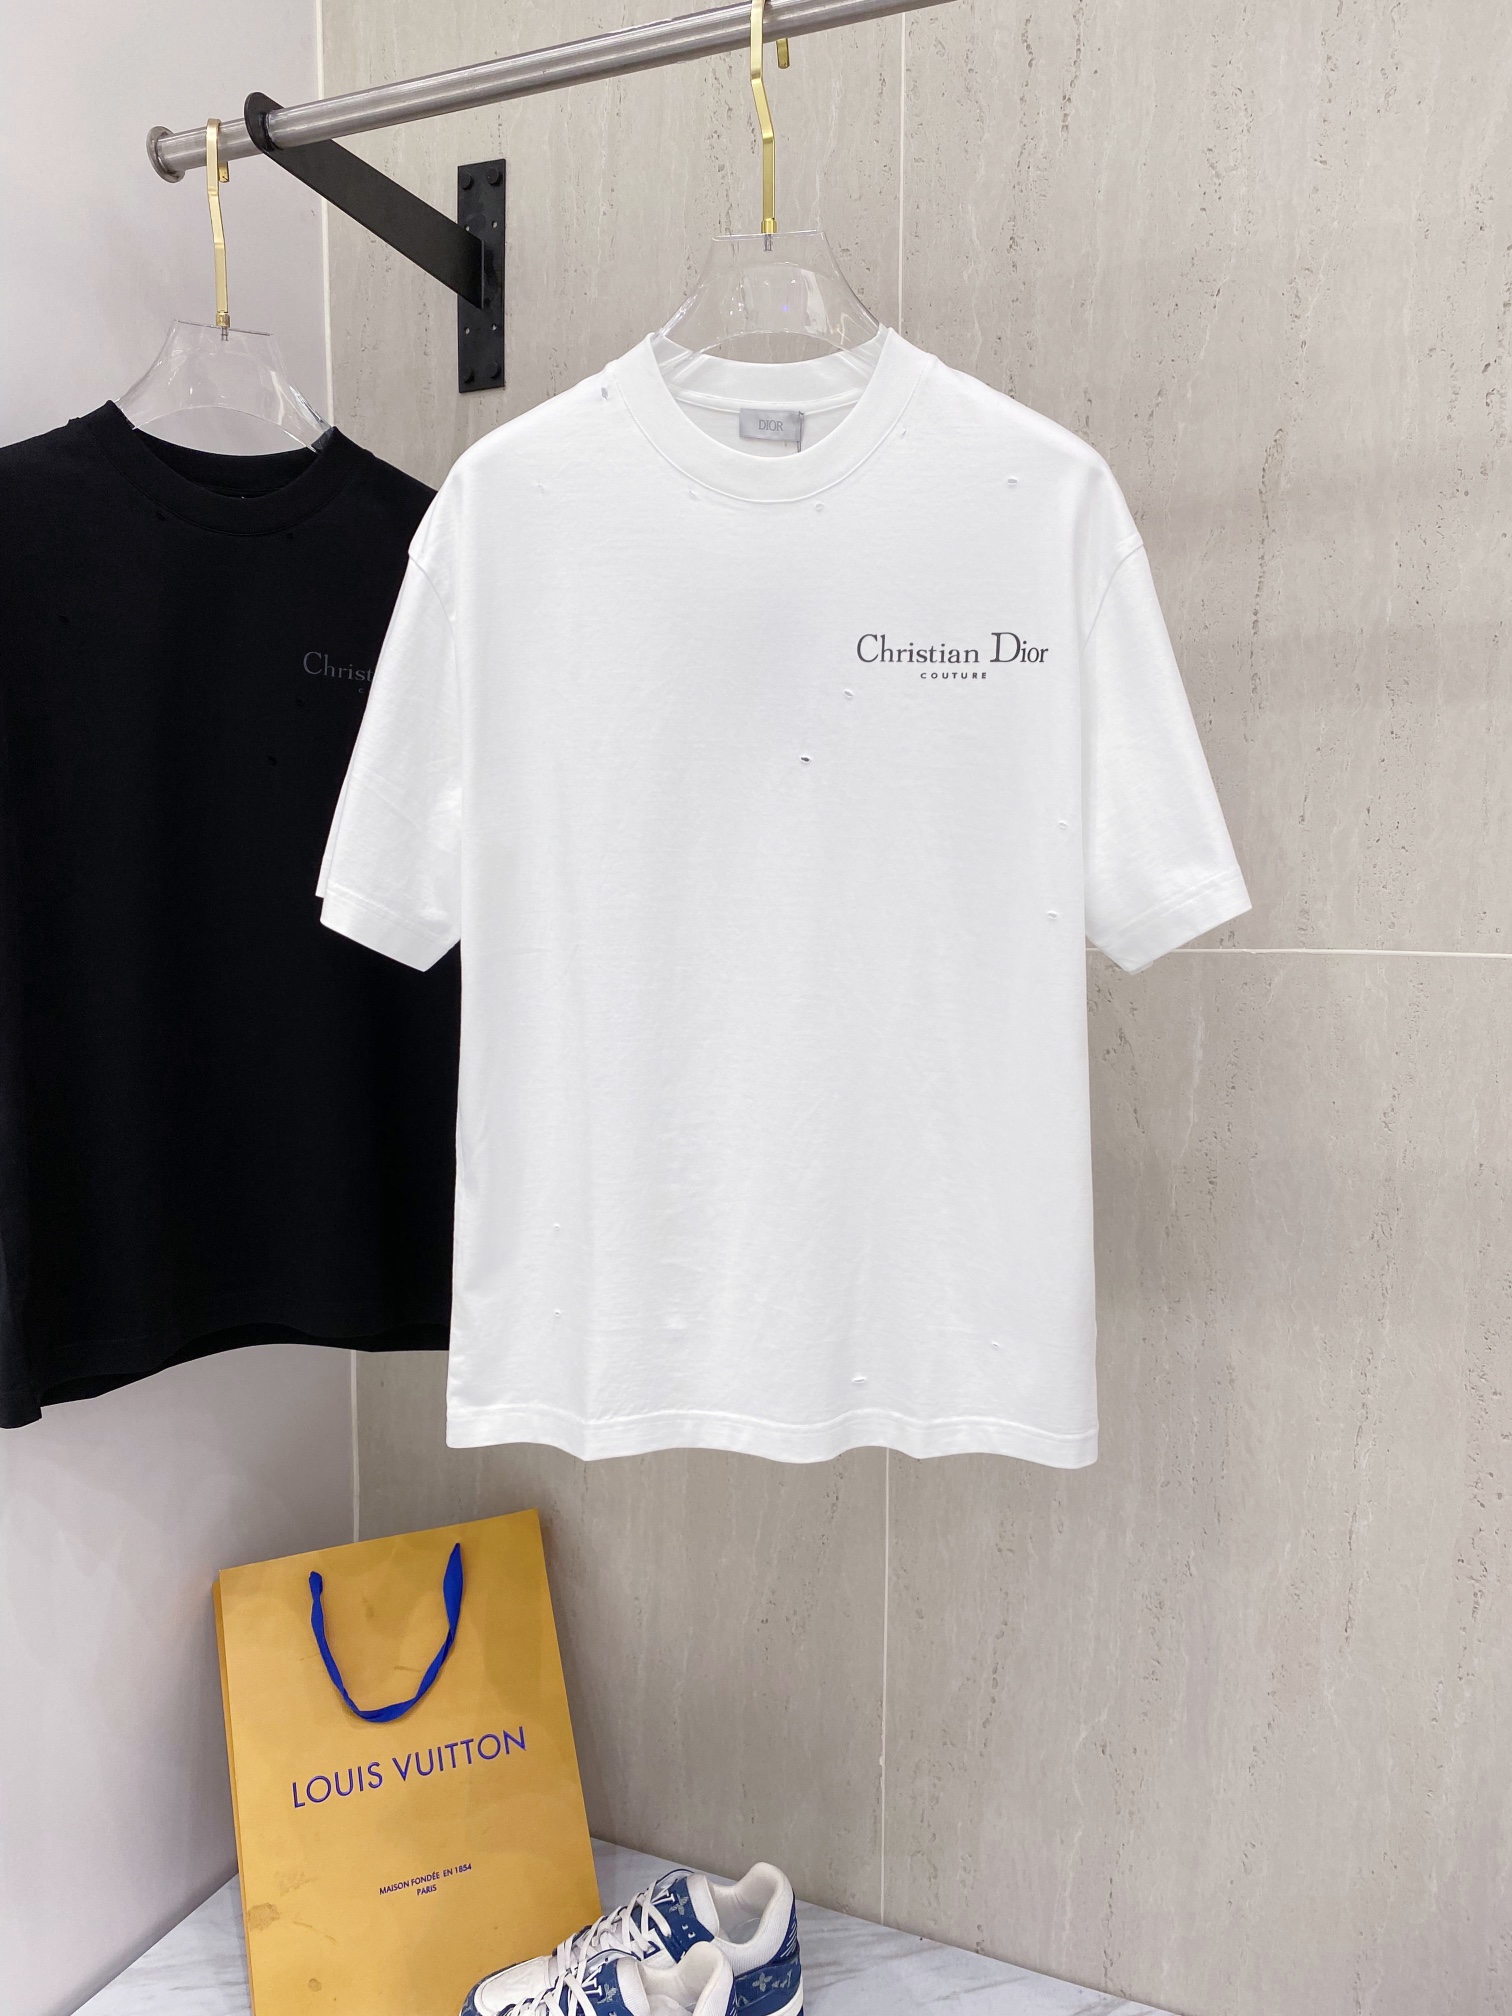 Dior Clothing T-Shirt Unisex Short Sleeve